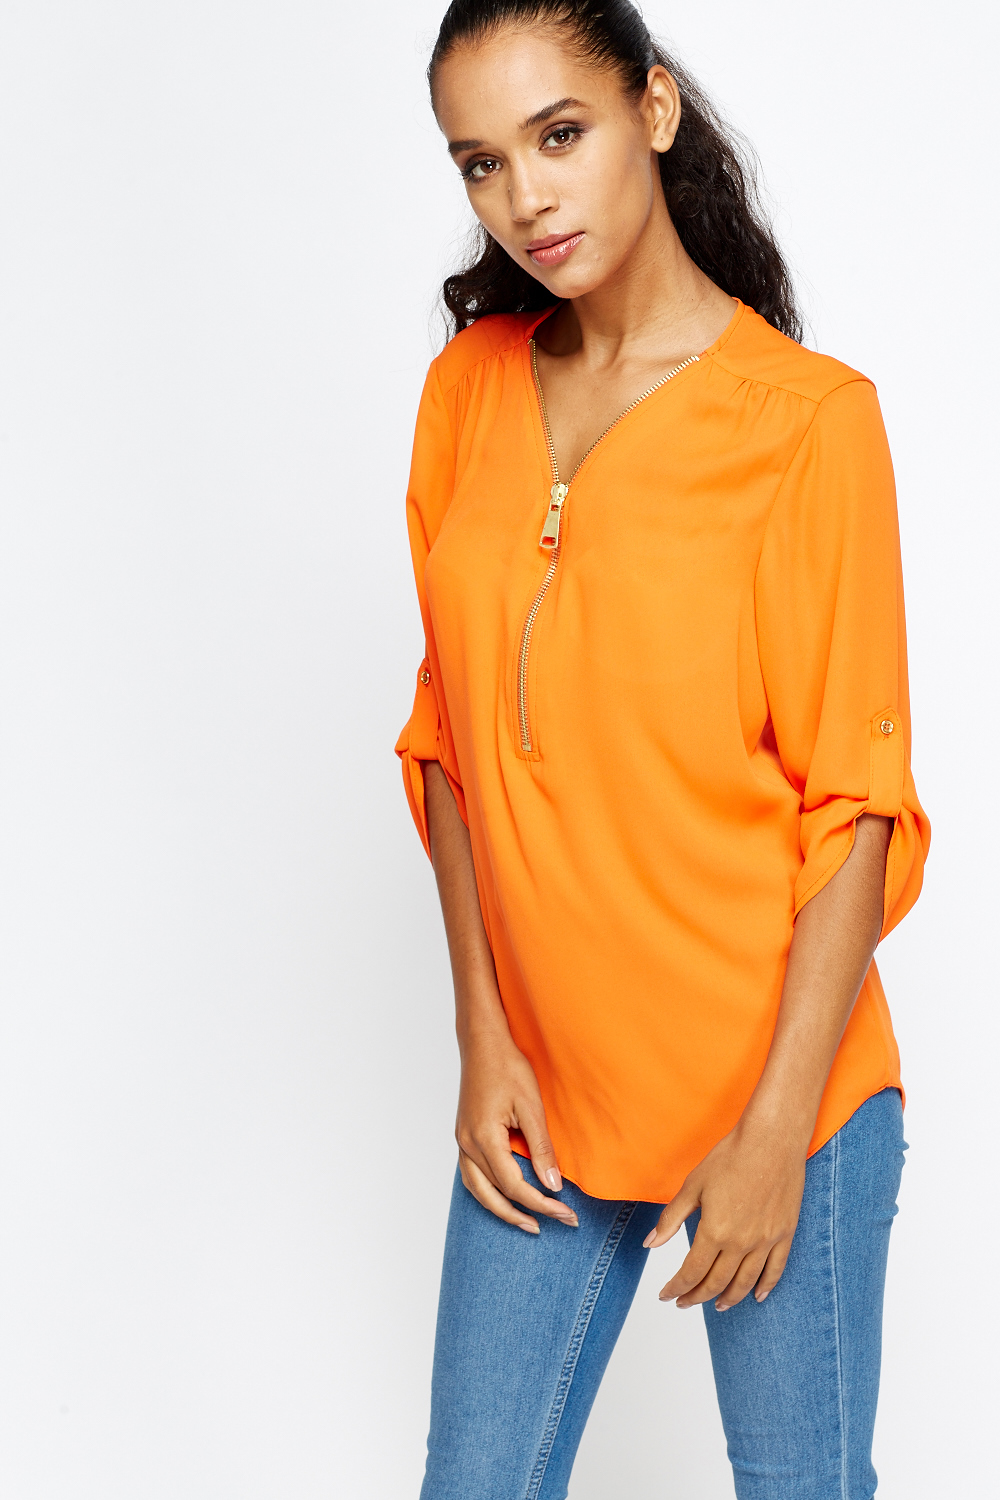 Long Sleeves Orange Blouse - Just $7